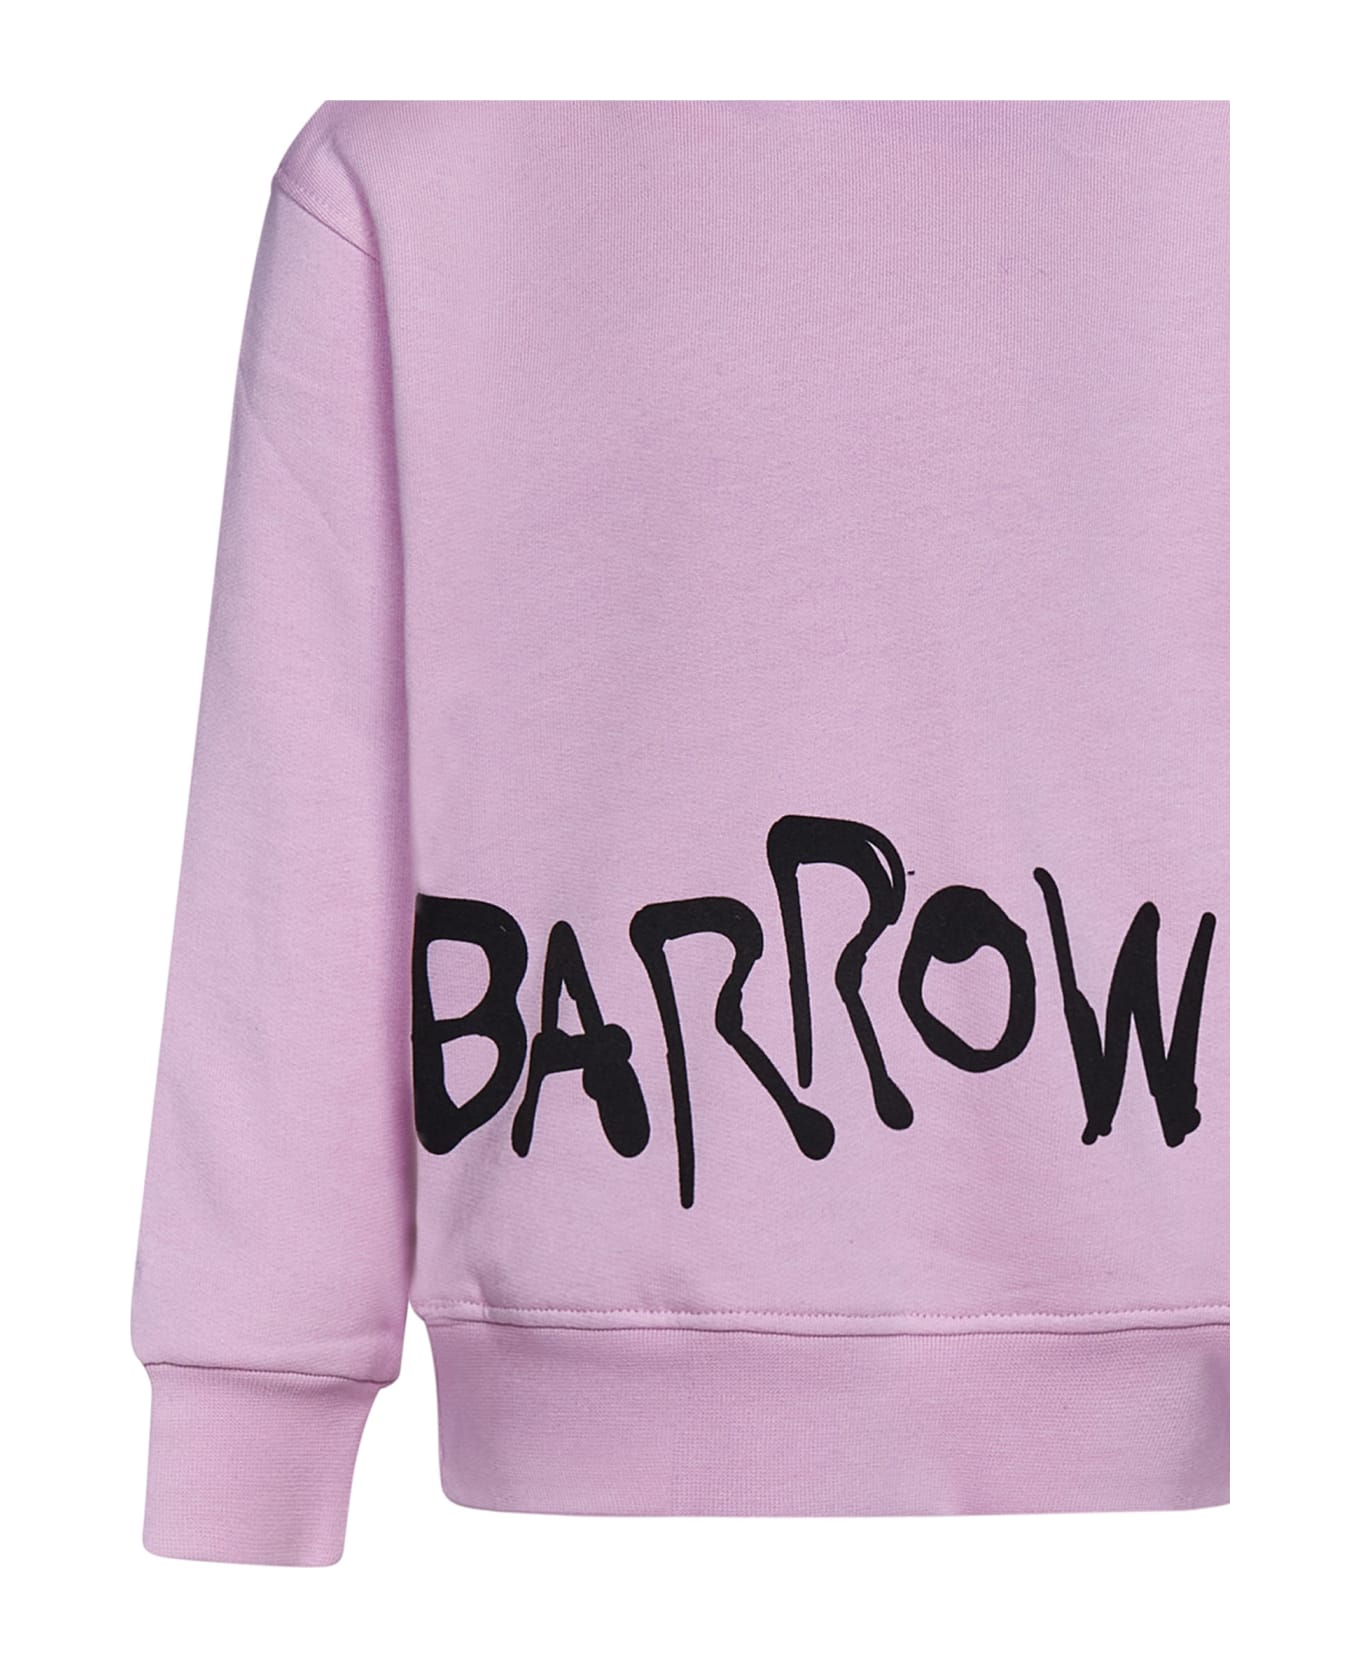 Barrow Sweatshirt - Rosa